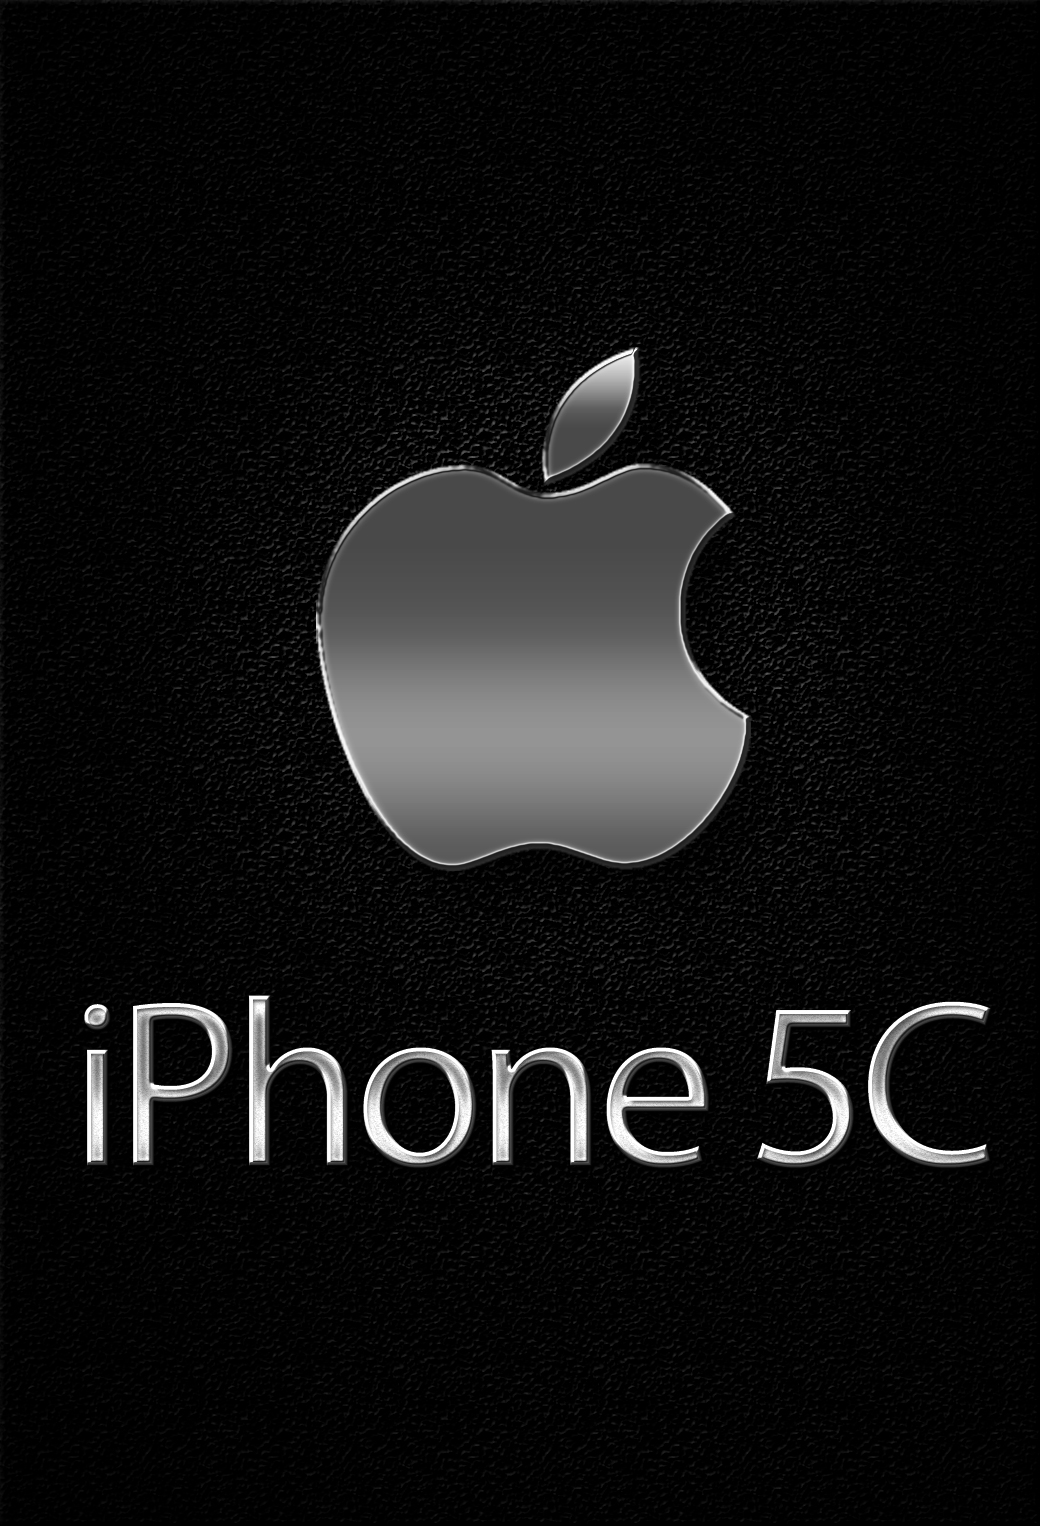 Iphone 5c ロゴ 147 Iphone壁紙 すべて1136 X 640pxサイズ